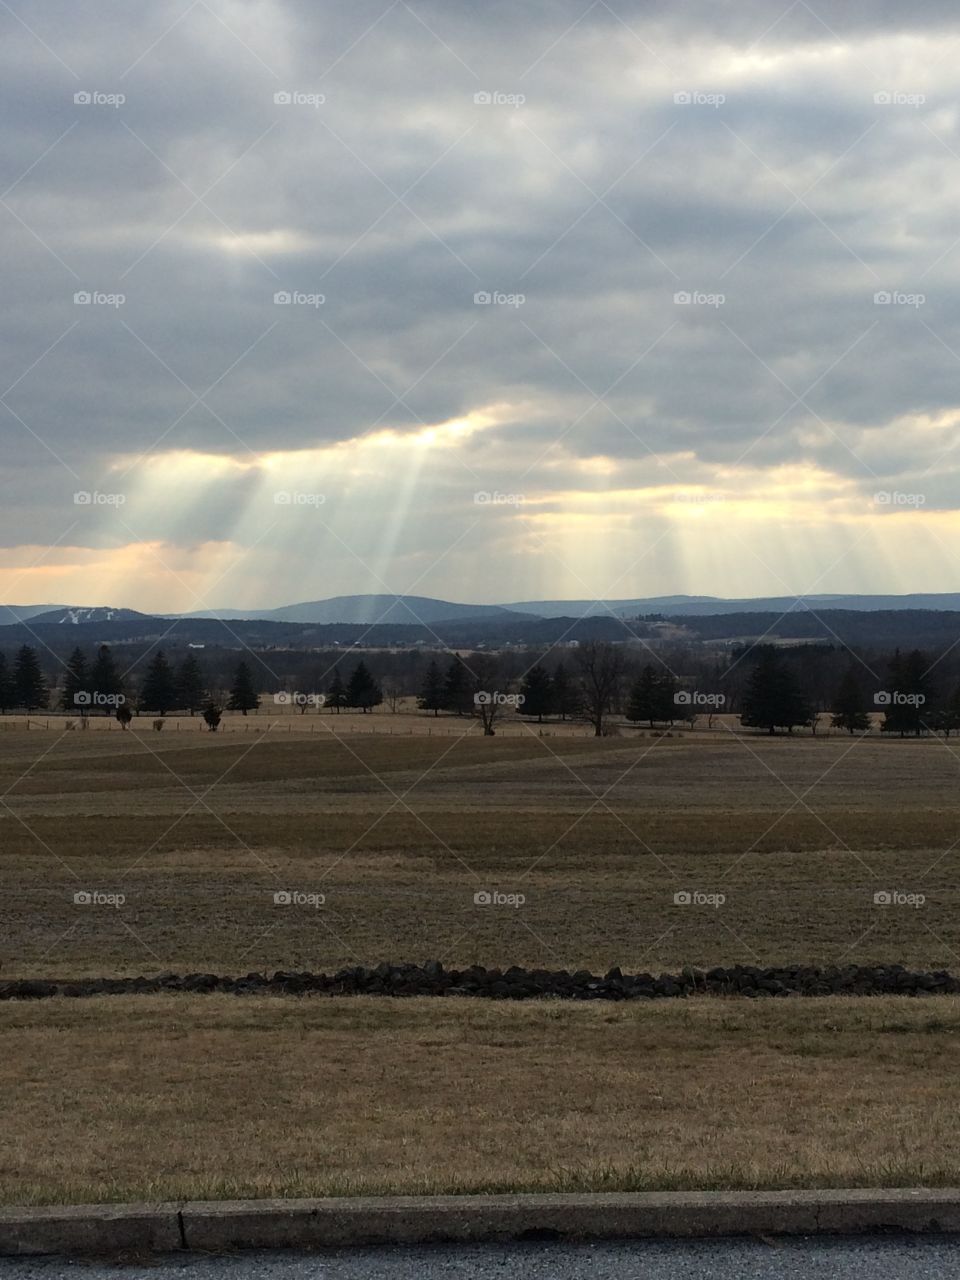 Gorgeous view in Gettysburg, Pennsylvania